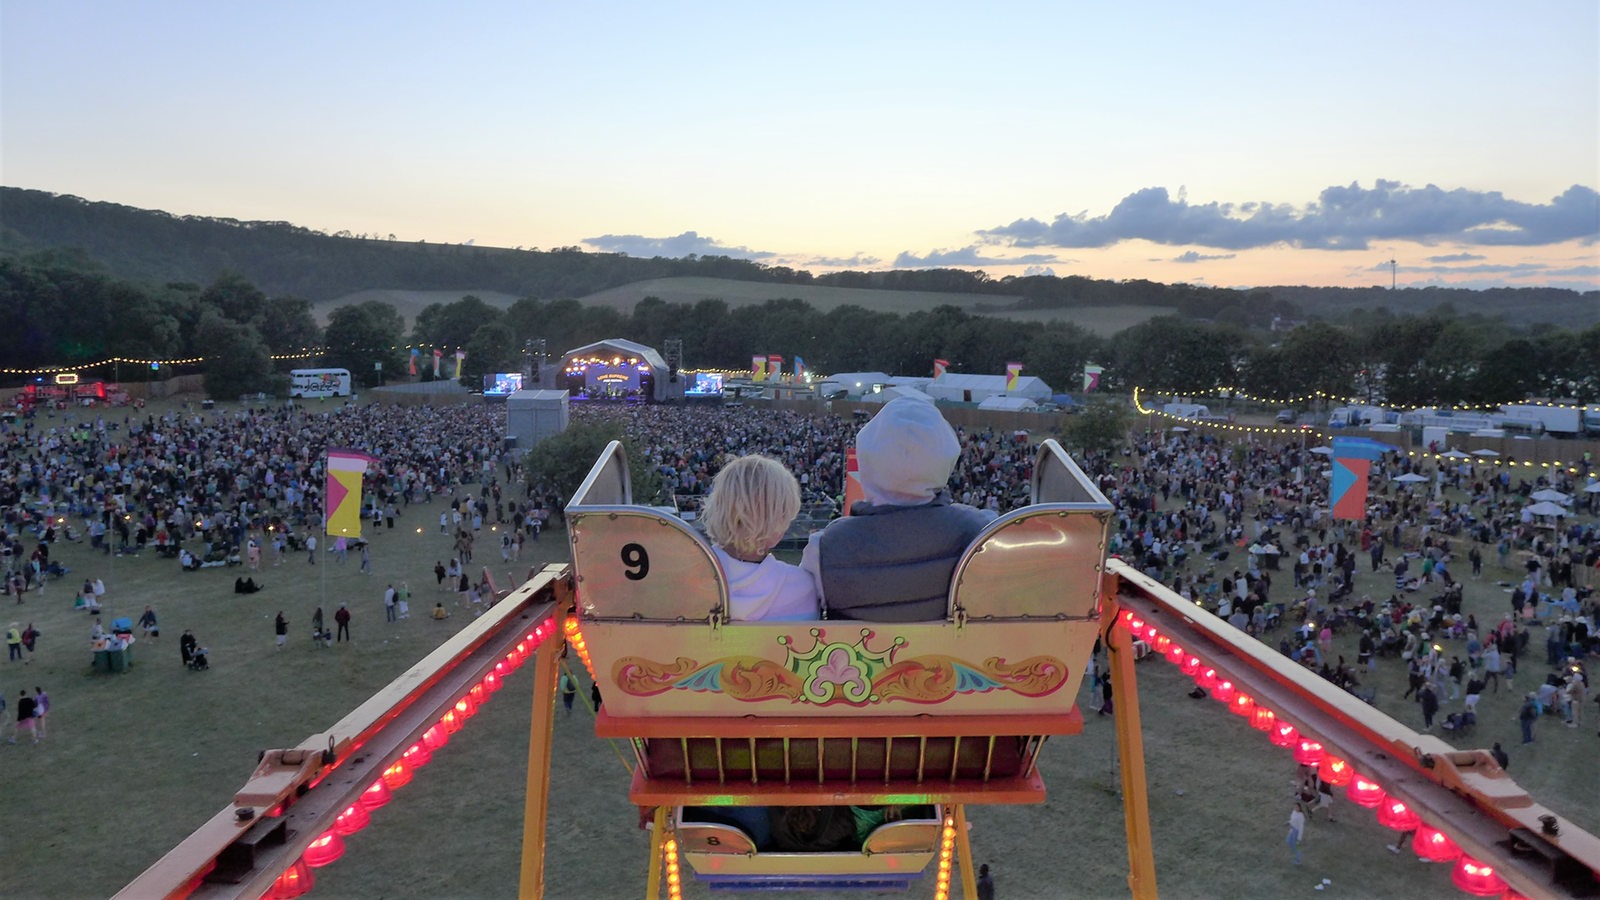 Zwei Zuschauer sitzen in einer Karroussel-Gondel über dem Festivalgelände